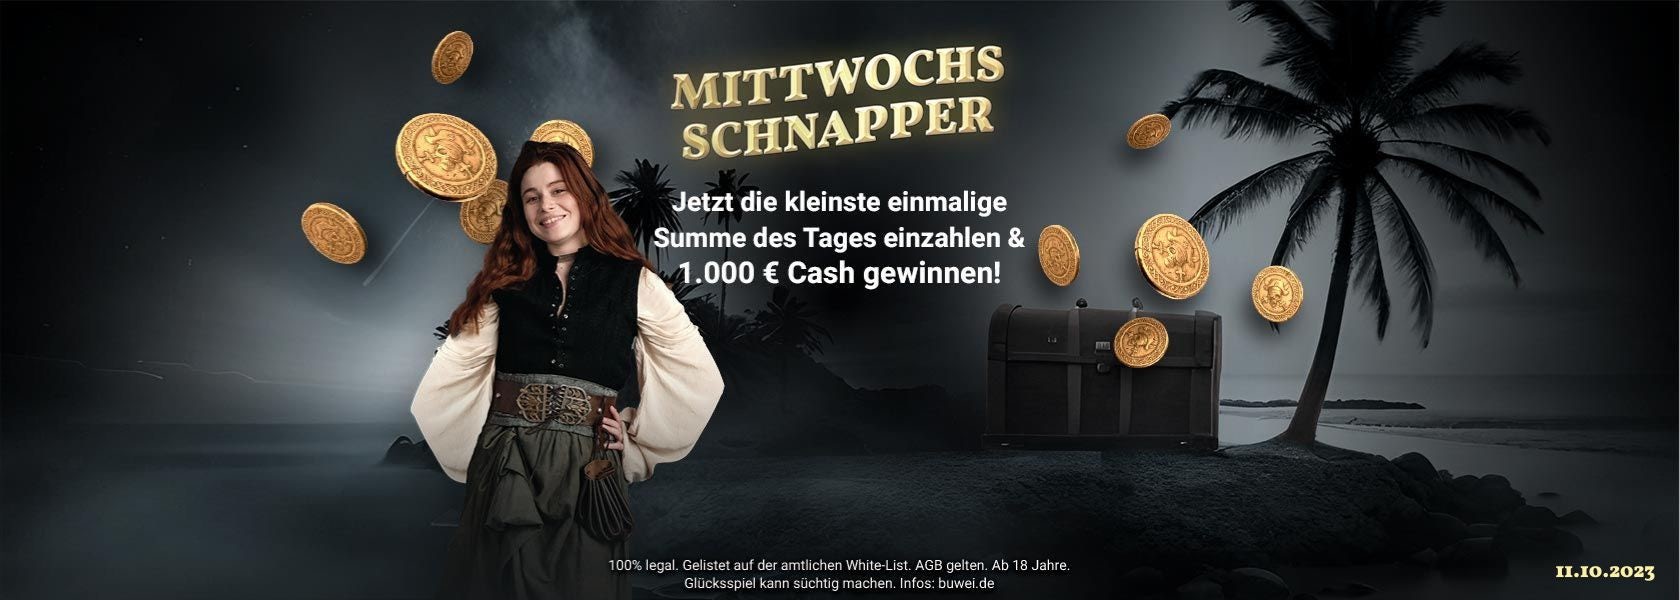 jackpotpiraten-mittwochs-schnapper-111023